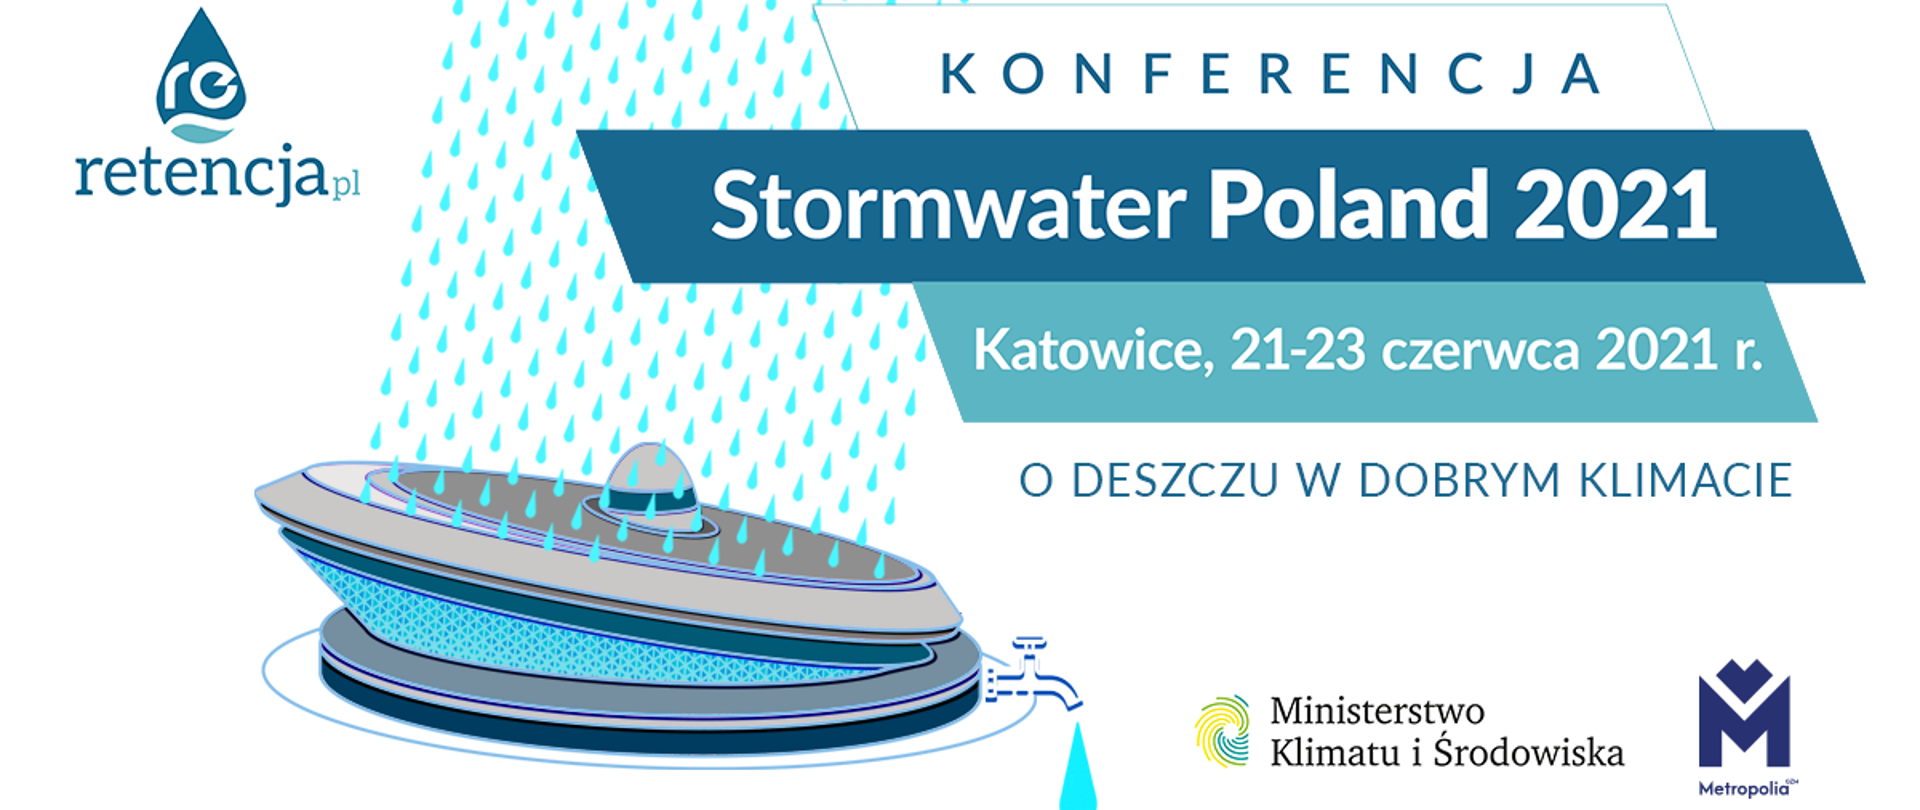 Infografika - konferencja Stormwater Poland2021